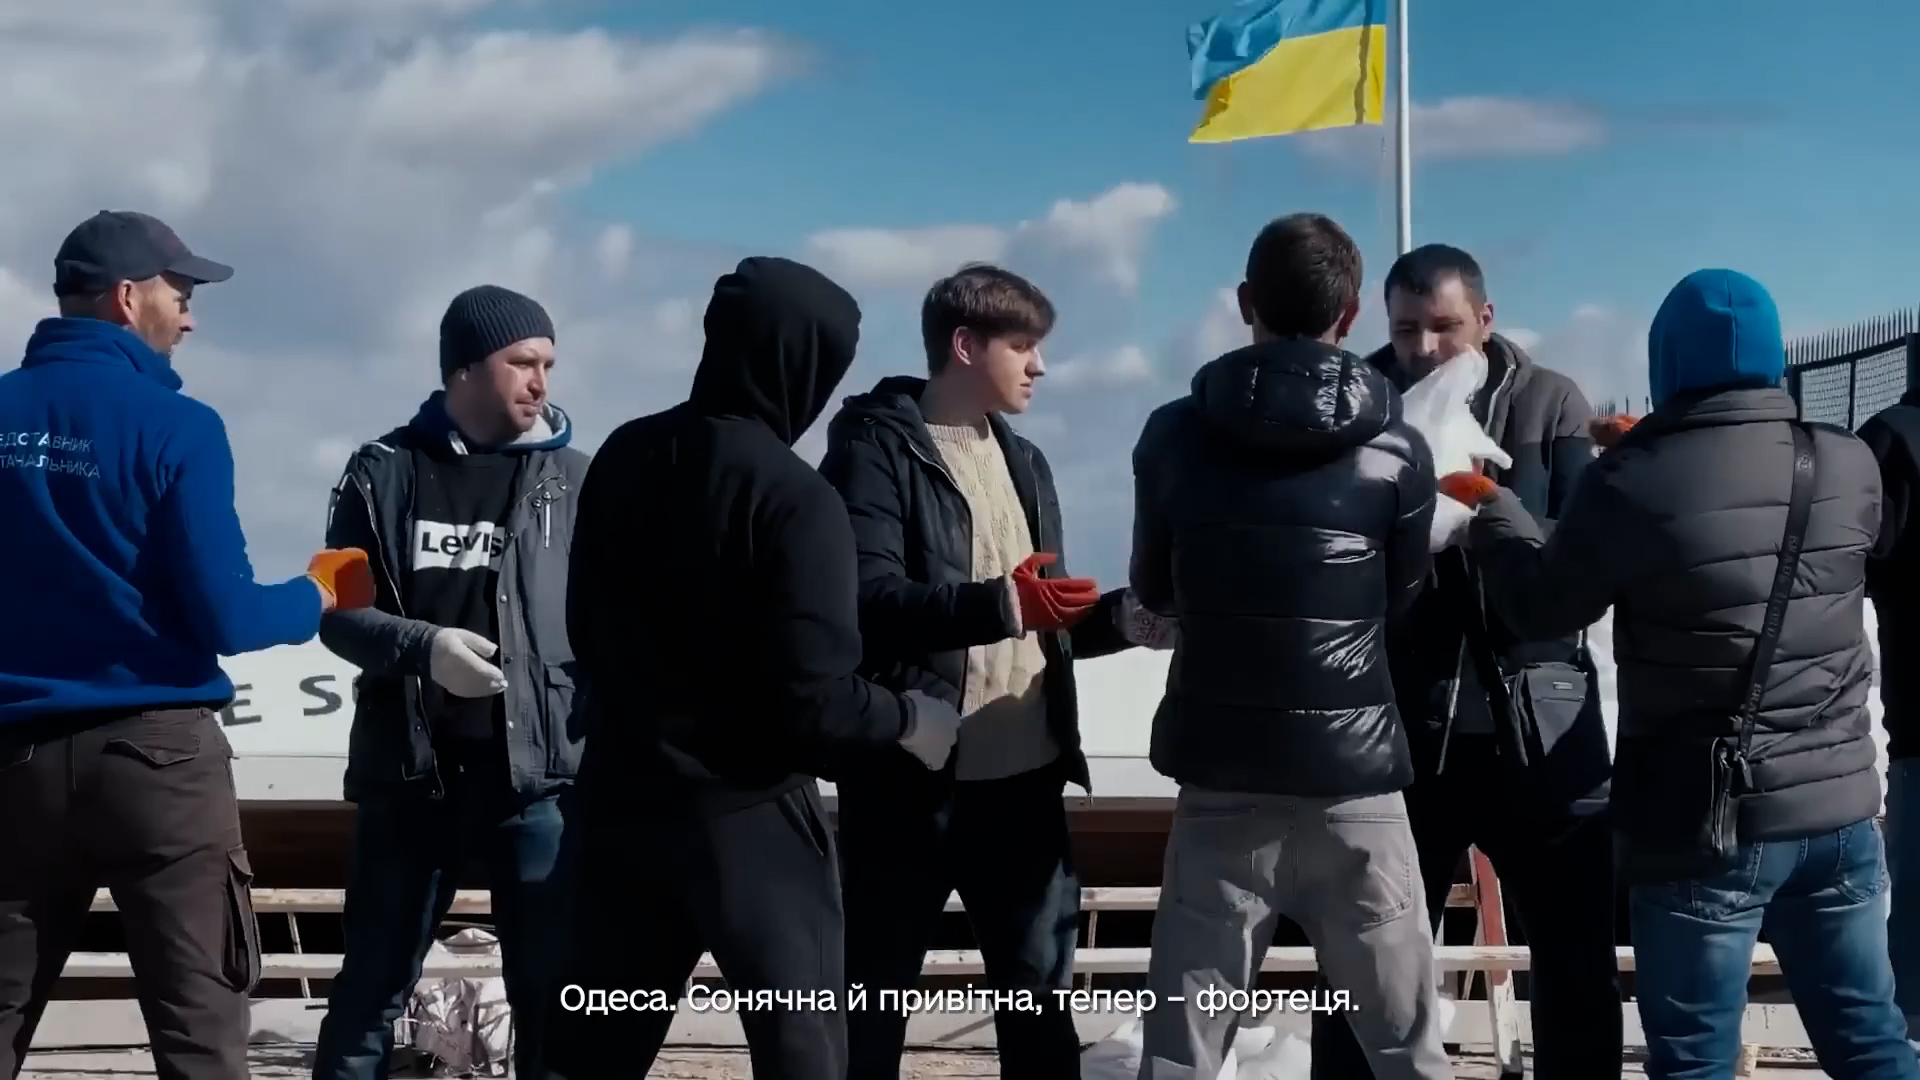 (ВИДЕО) В новогоднее обращение Зеленского вошли кадры репортажа NewsMaker из Одессы